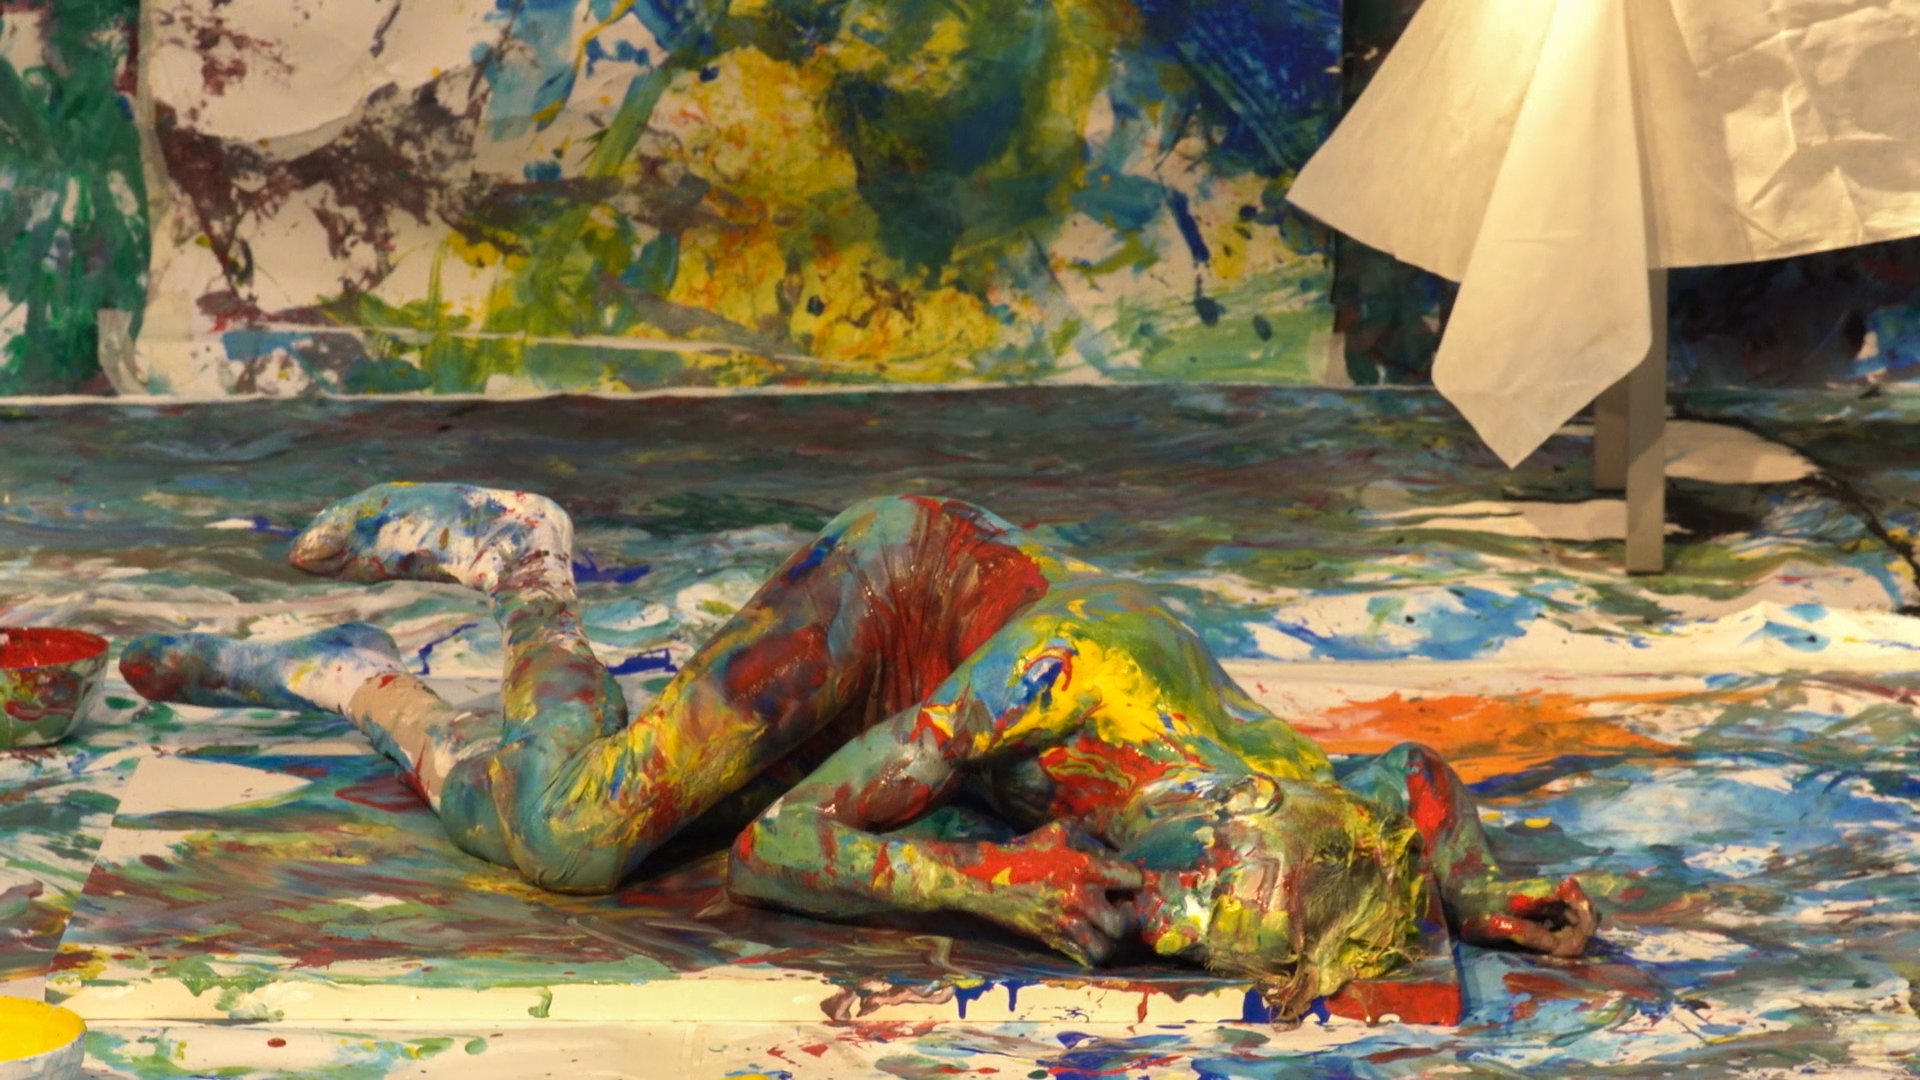 Marcos está deitado de lado em uma tela de pintura. Ele, a tela e o ambiente estão com tinta colorida.